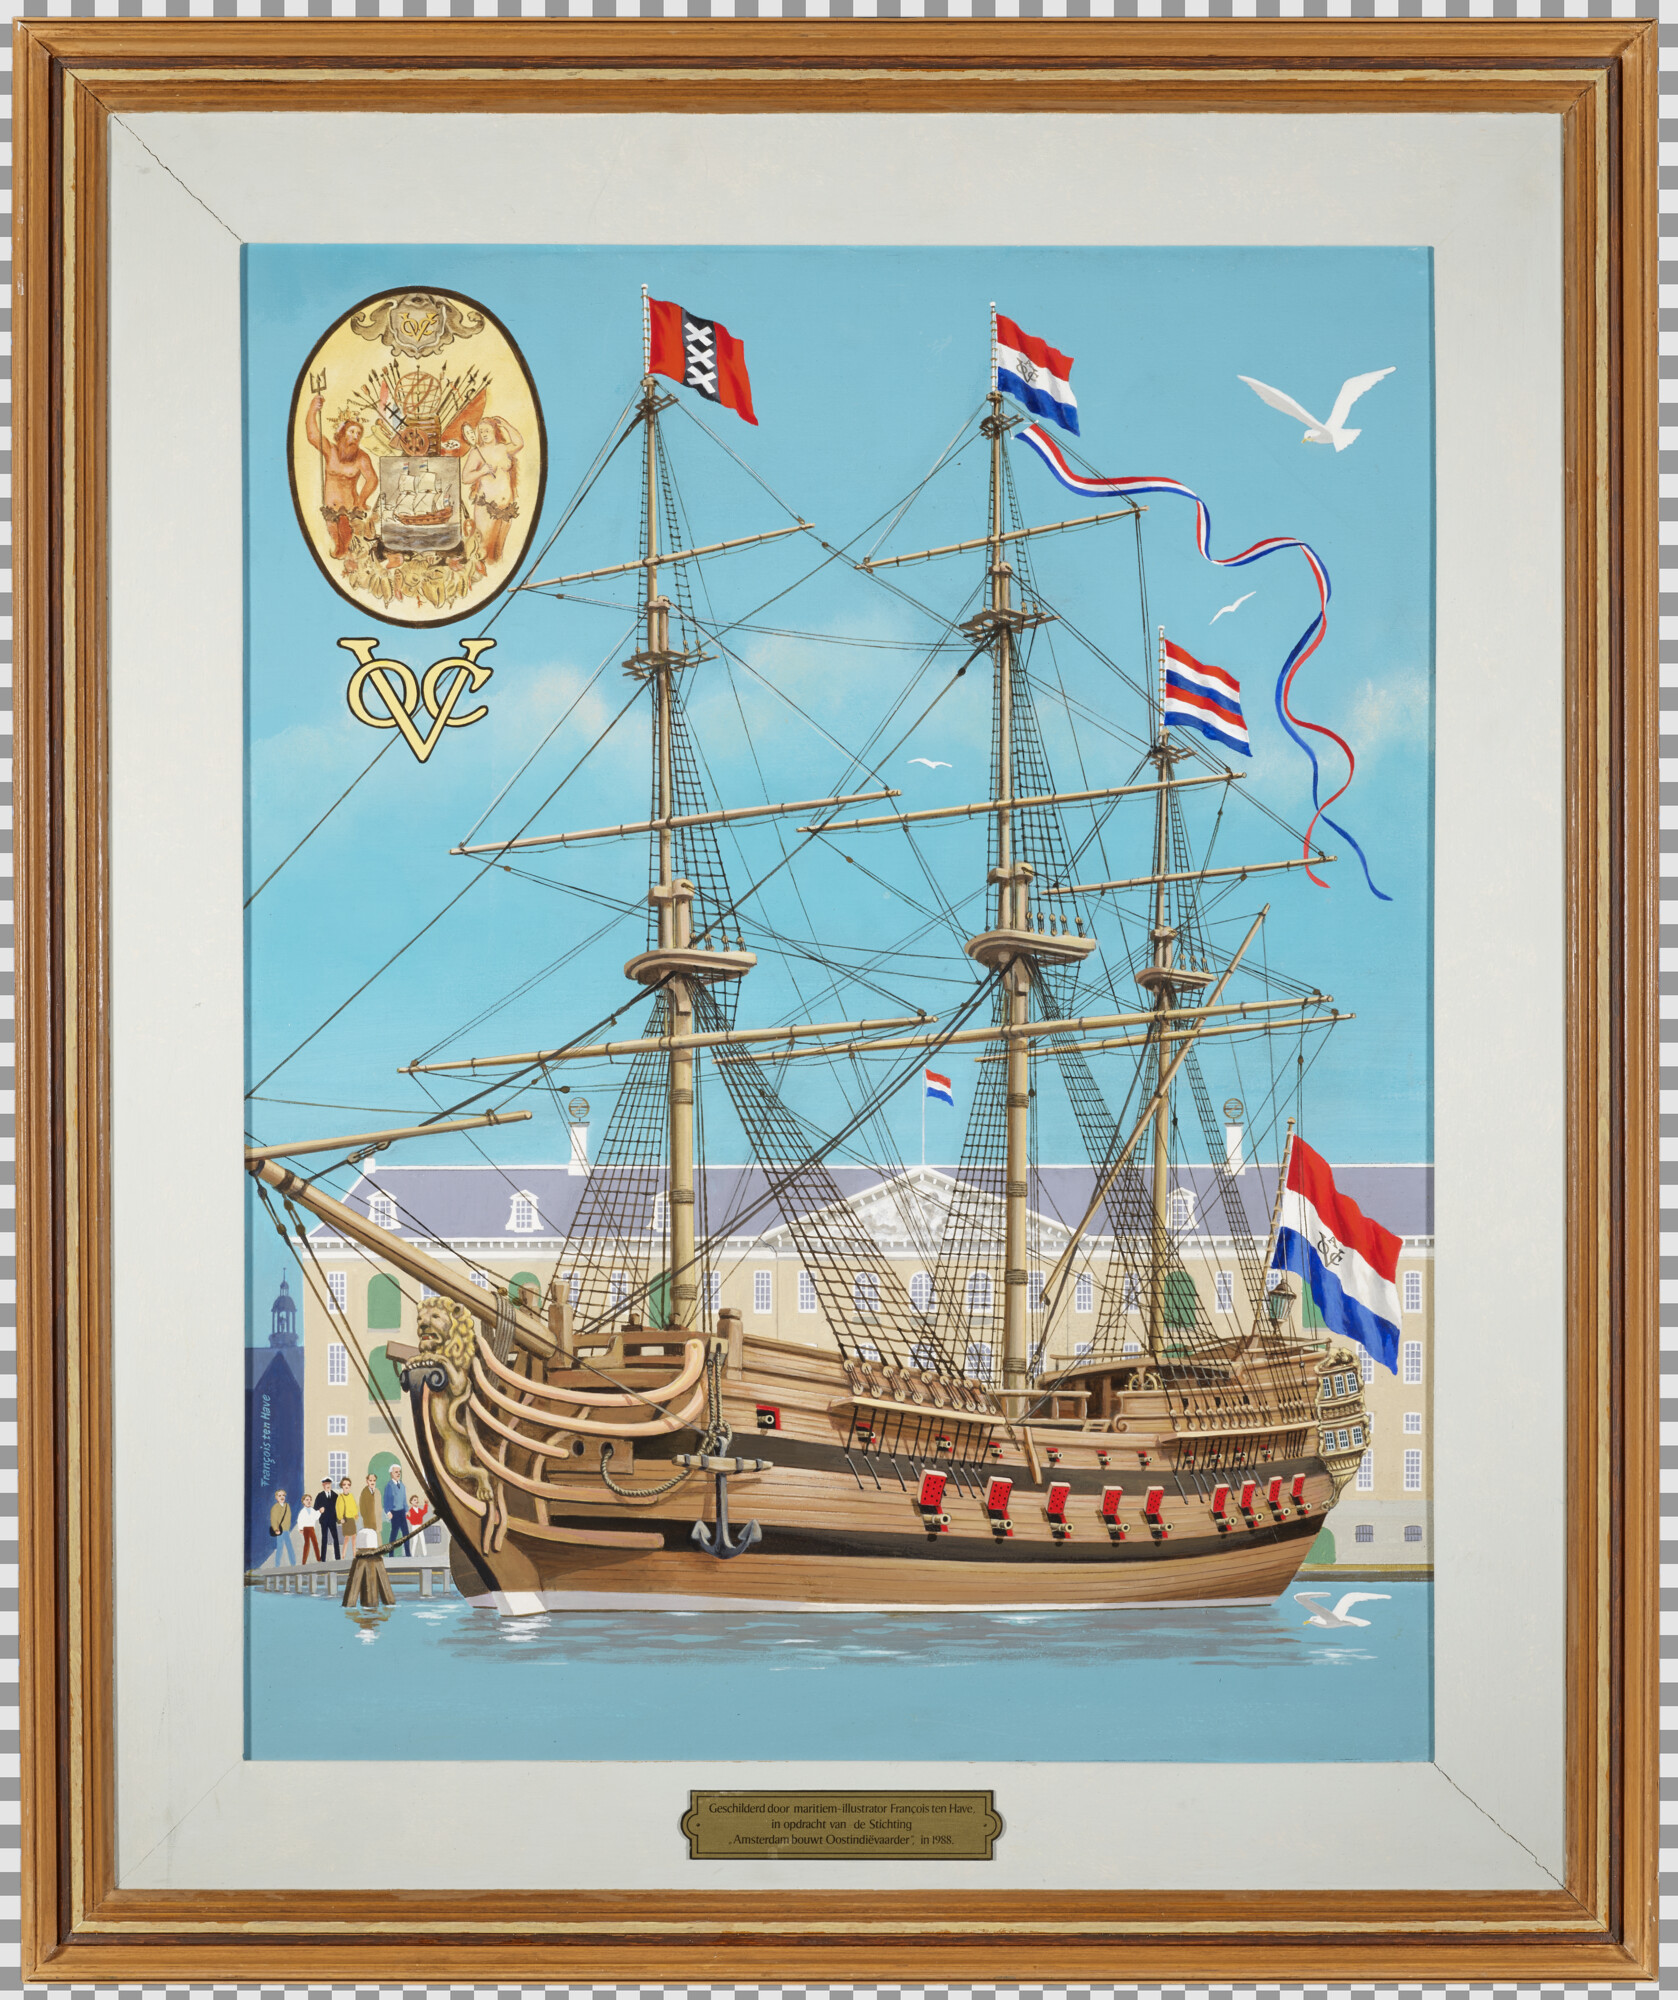 2020.0251; Replica van de Oost-Indiëvaarder Amsterdam; schilderij